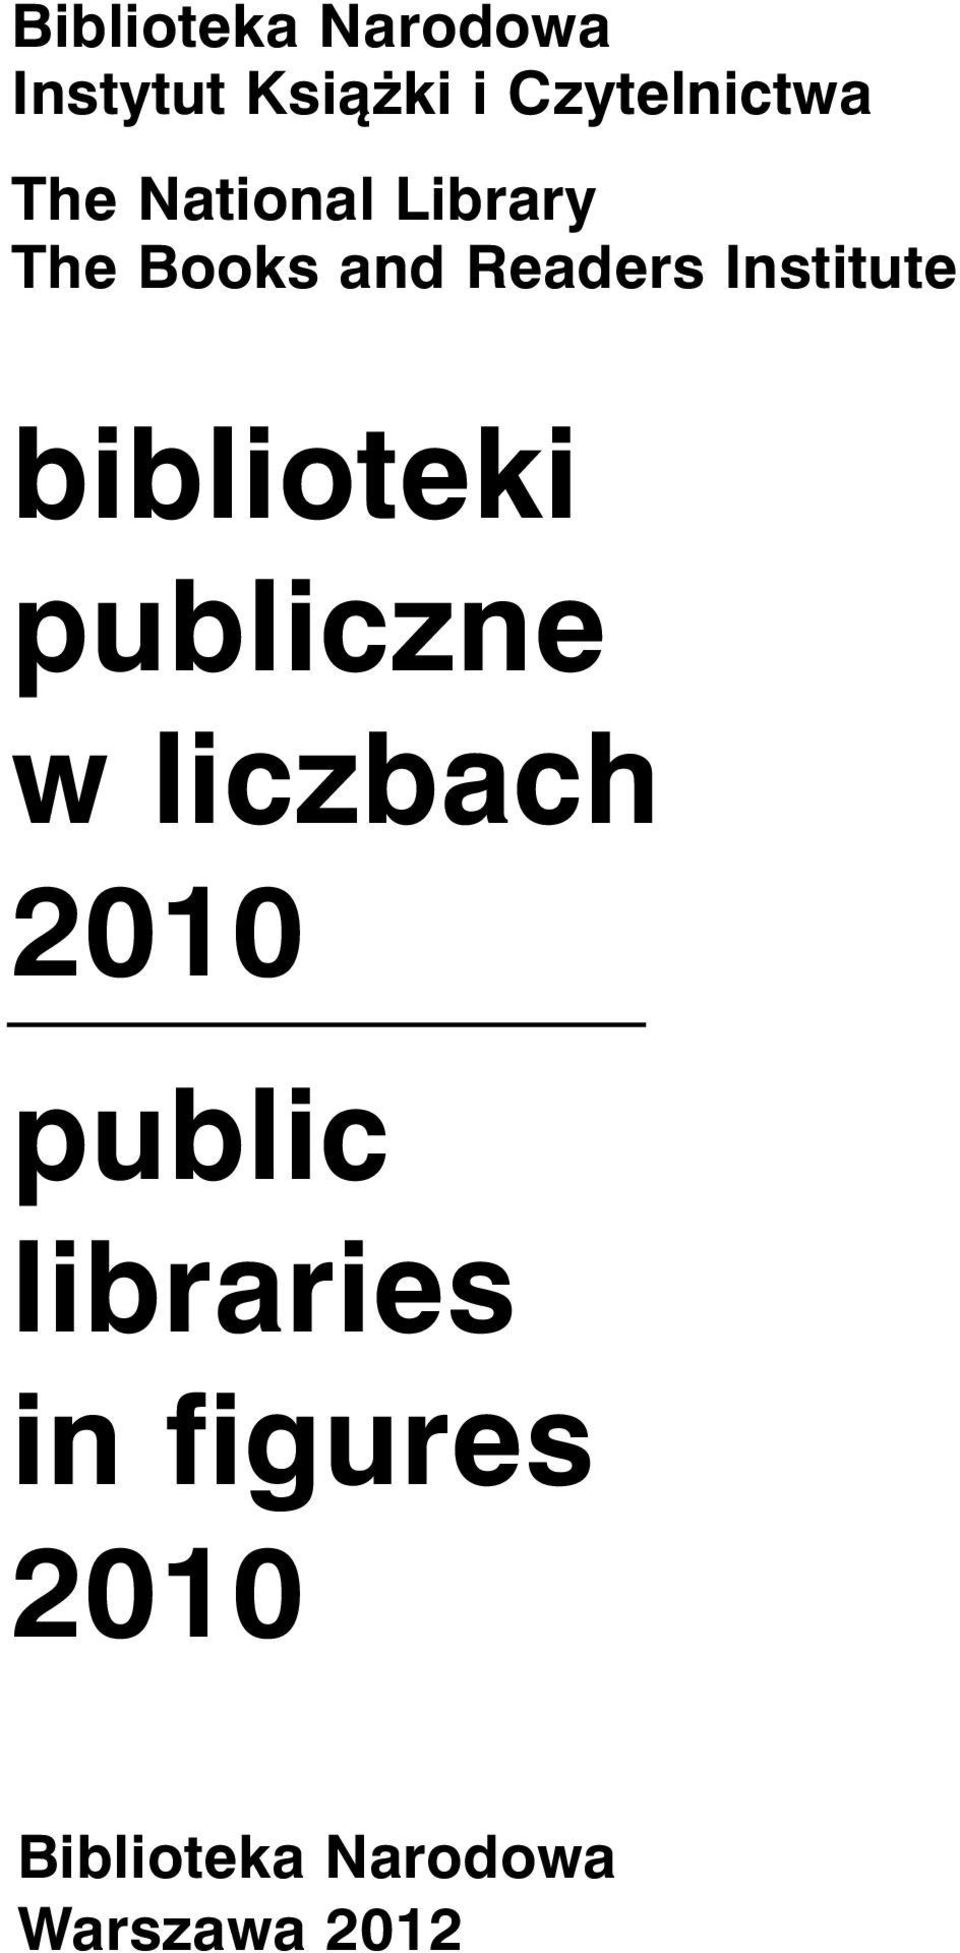 Institute biblioteki publiczne w liczbach 2010